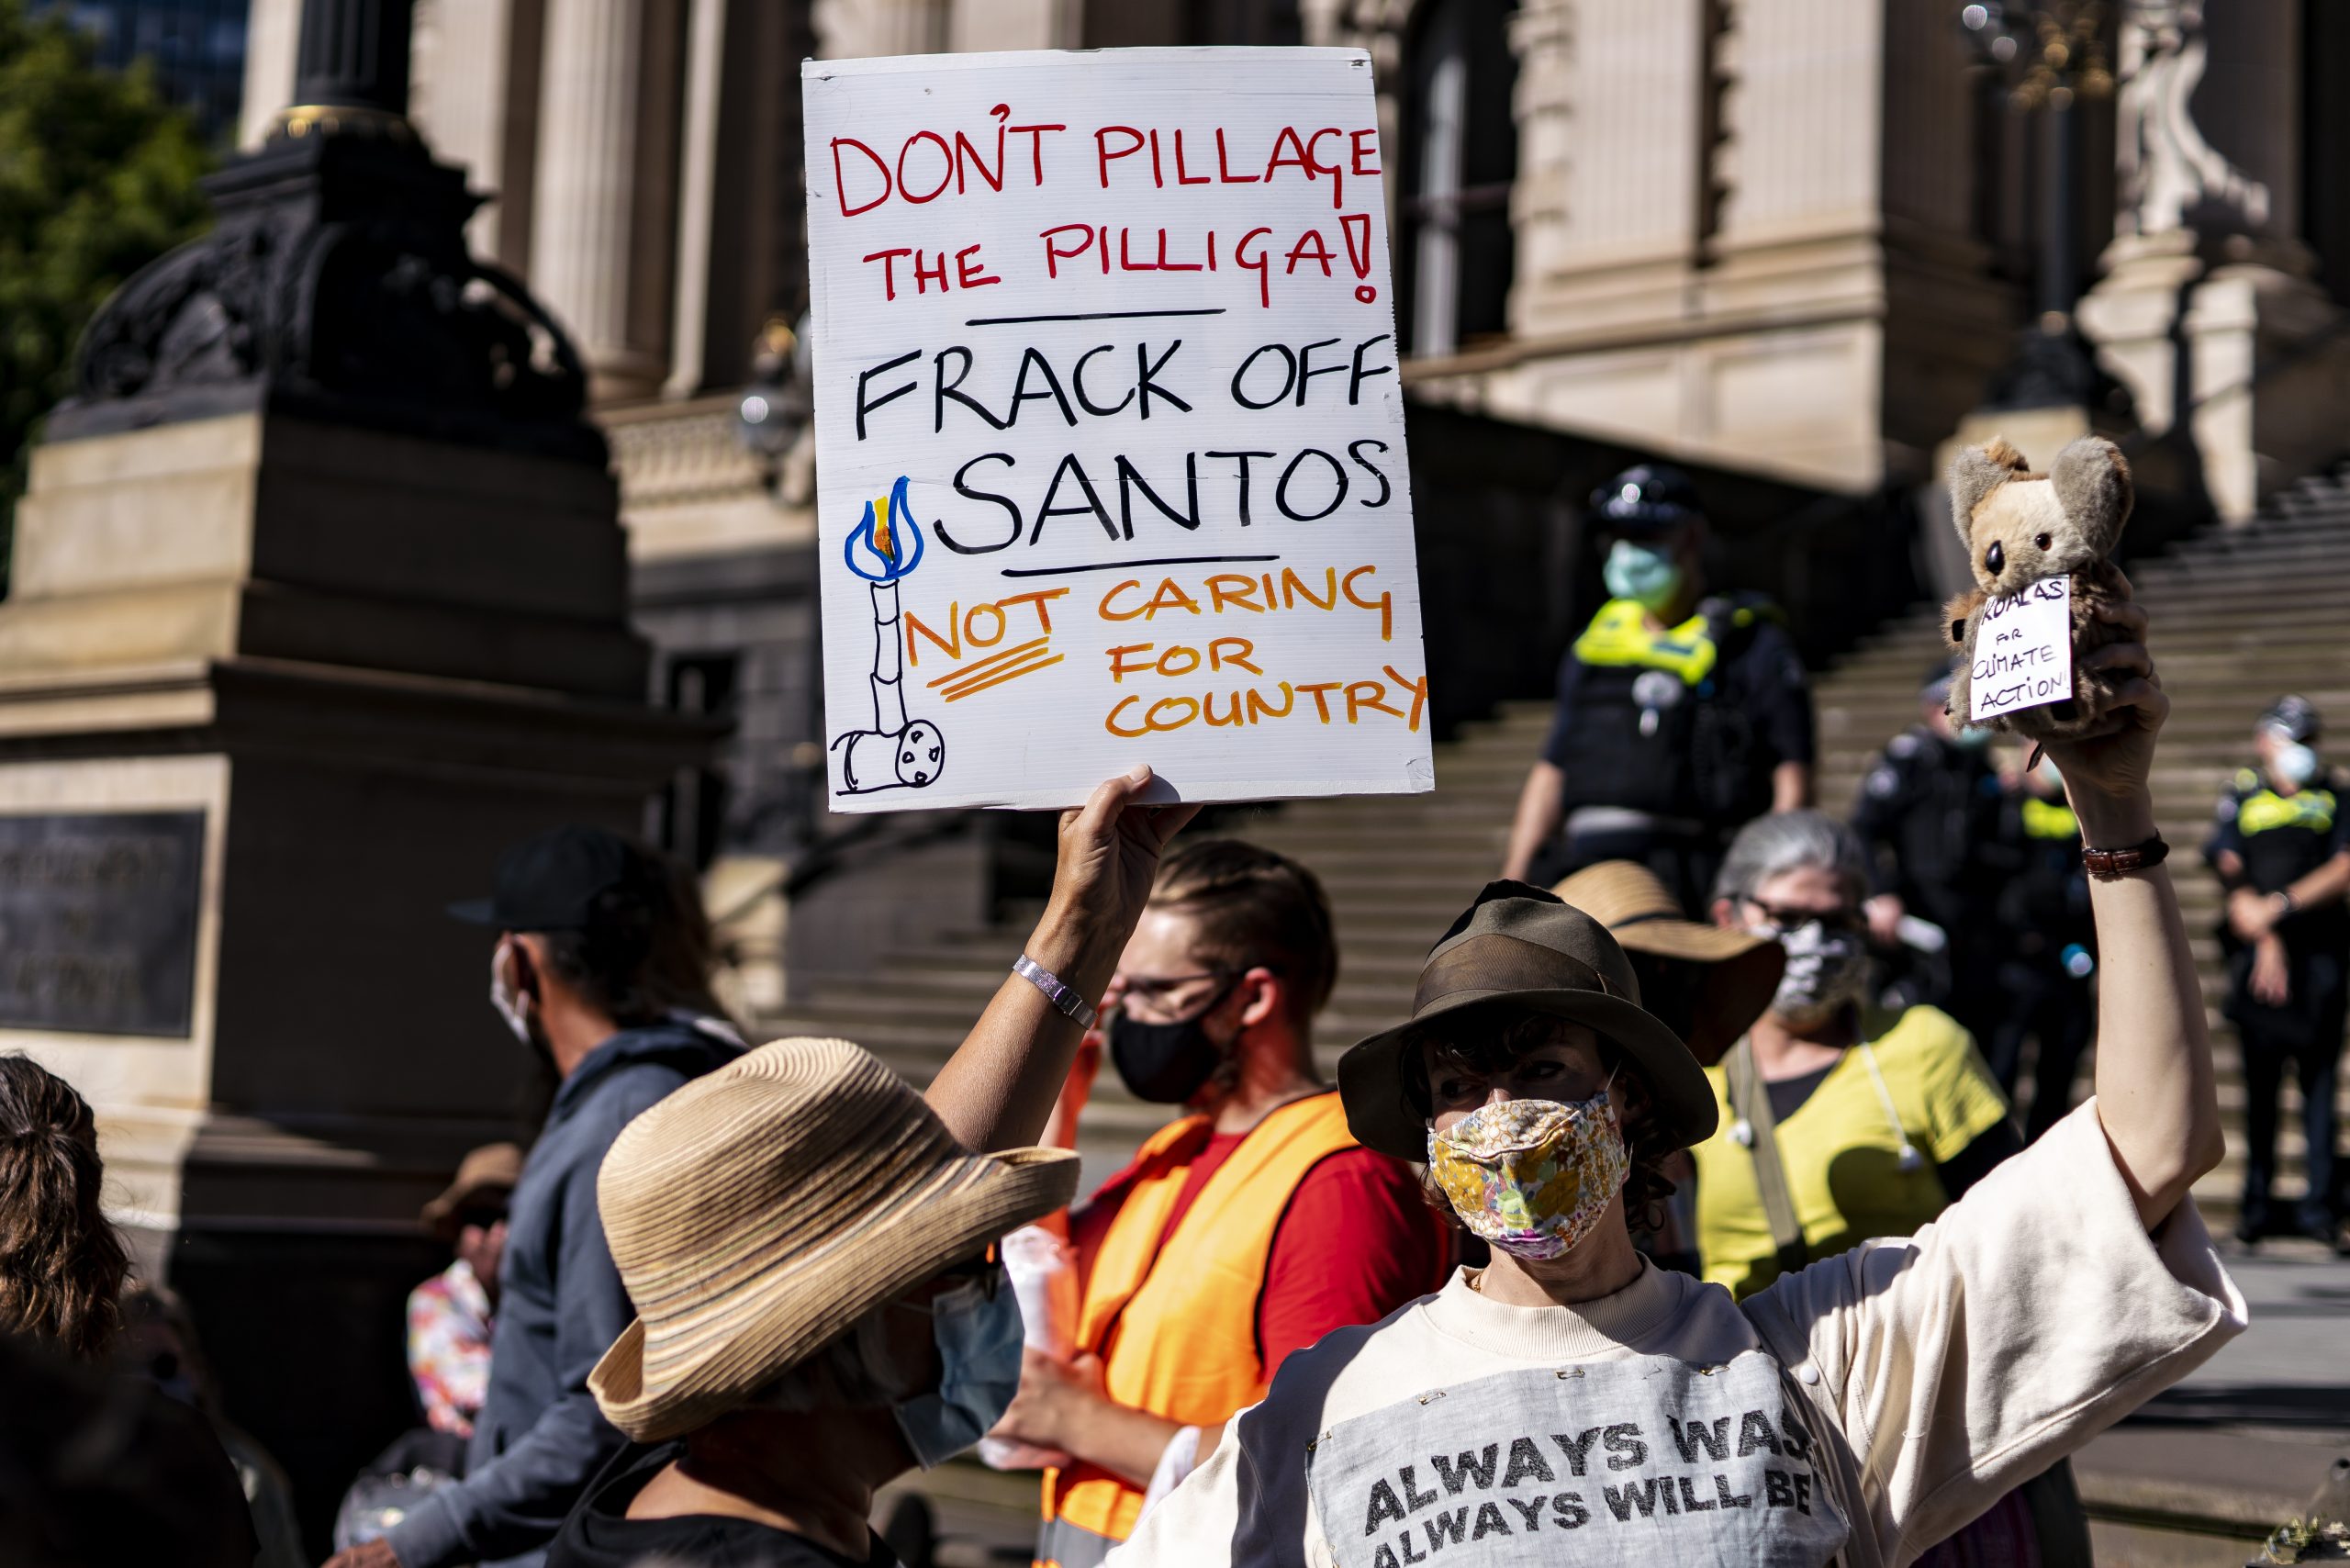 Fracking in Australia